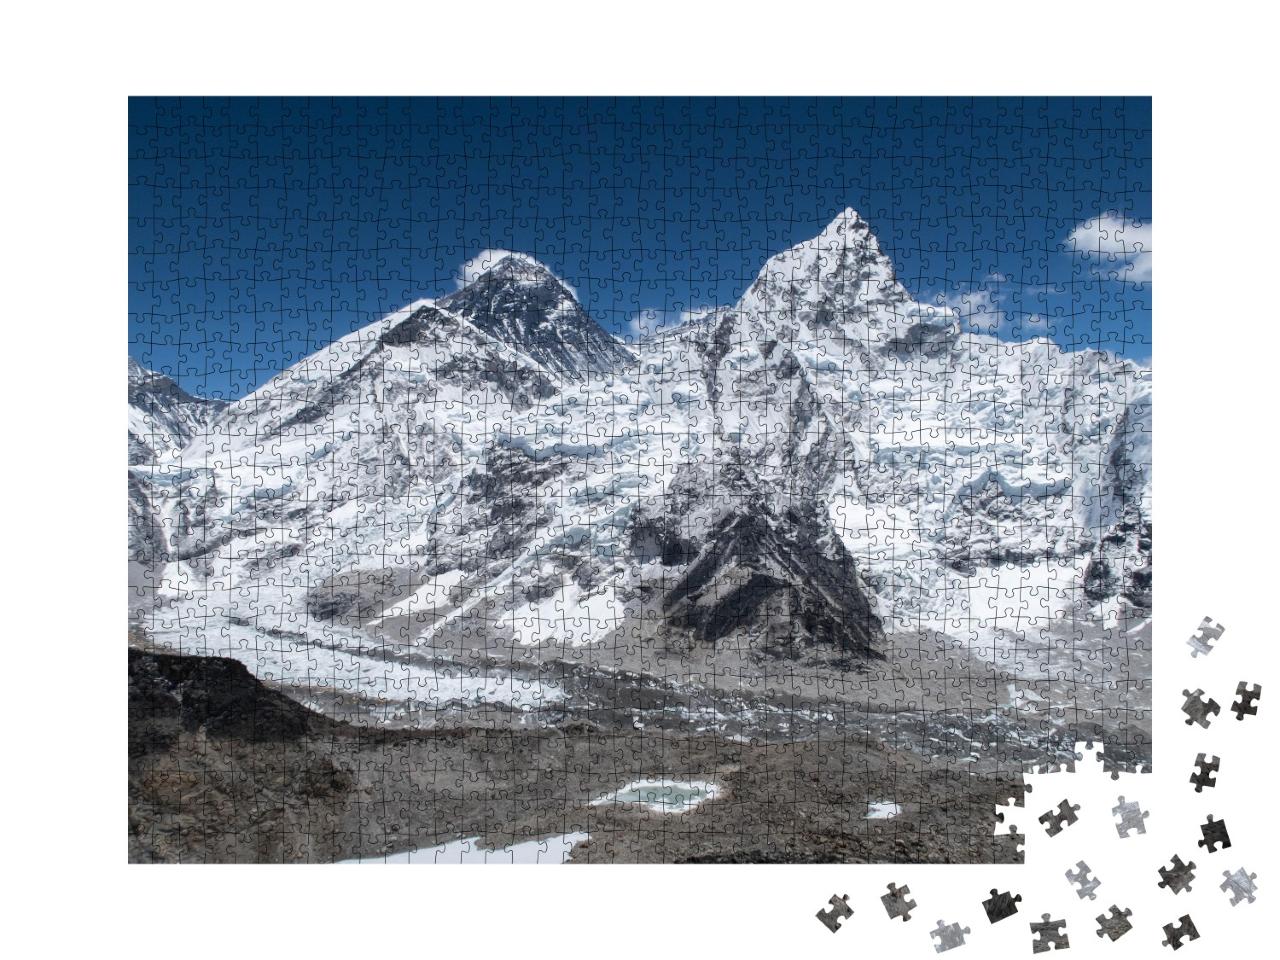 Puzzle de 1000 pièces « A couper le souffle : la vue du Kala Patthar sur le mont Everest »